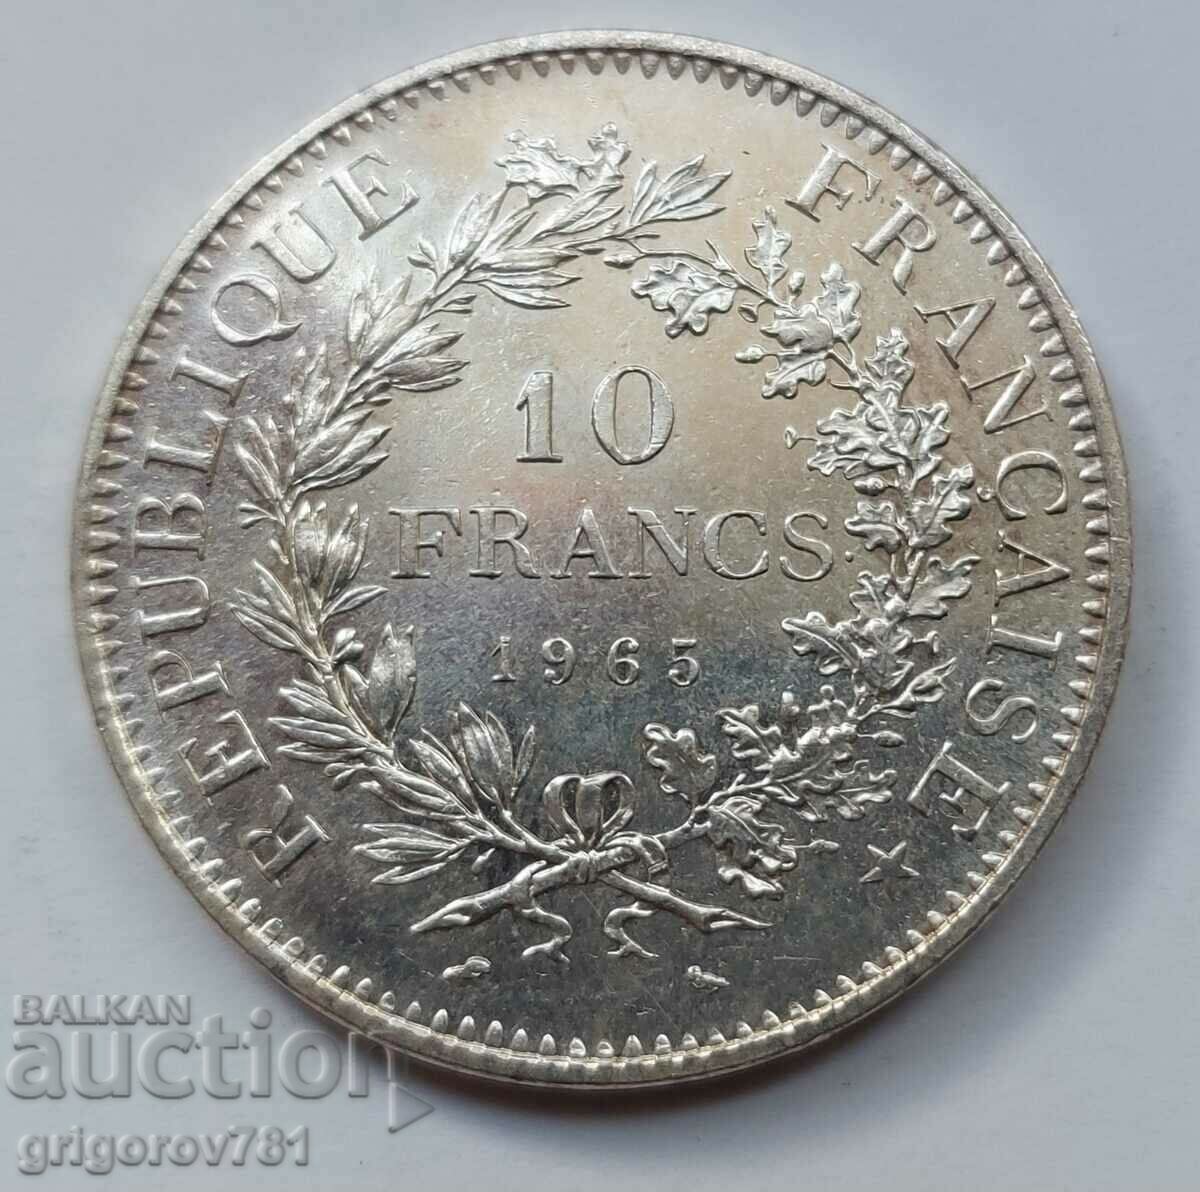 10 Φράγκα Ασήμι Γαλλία 1965 - Ασημένιο νόμισμα #34